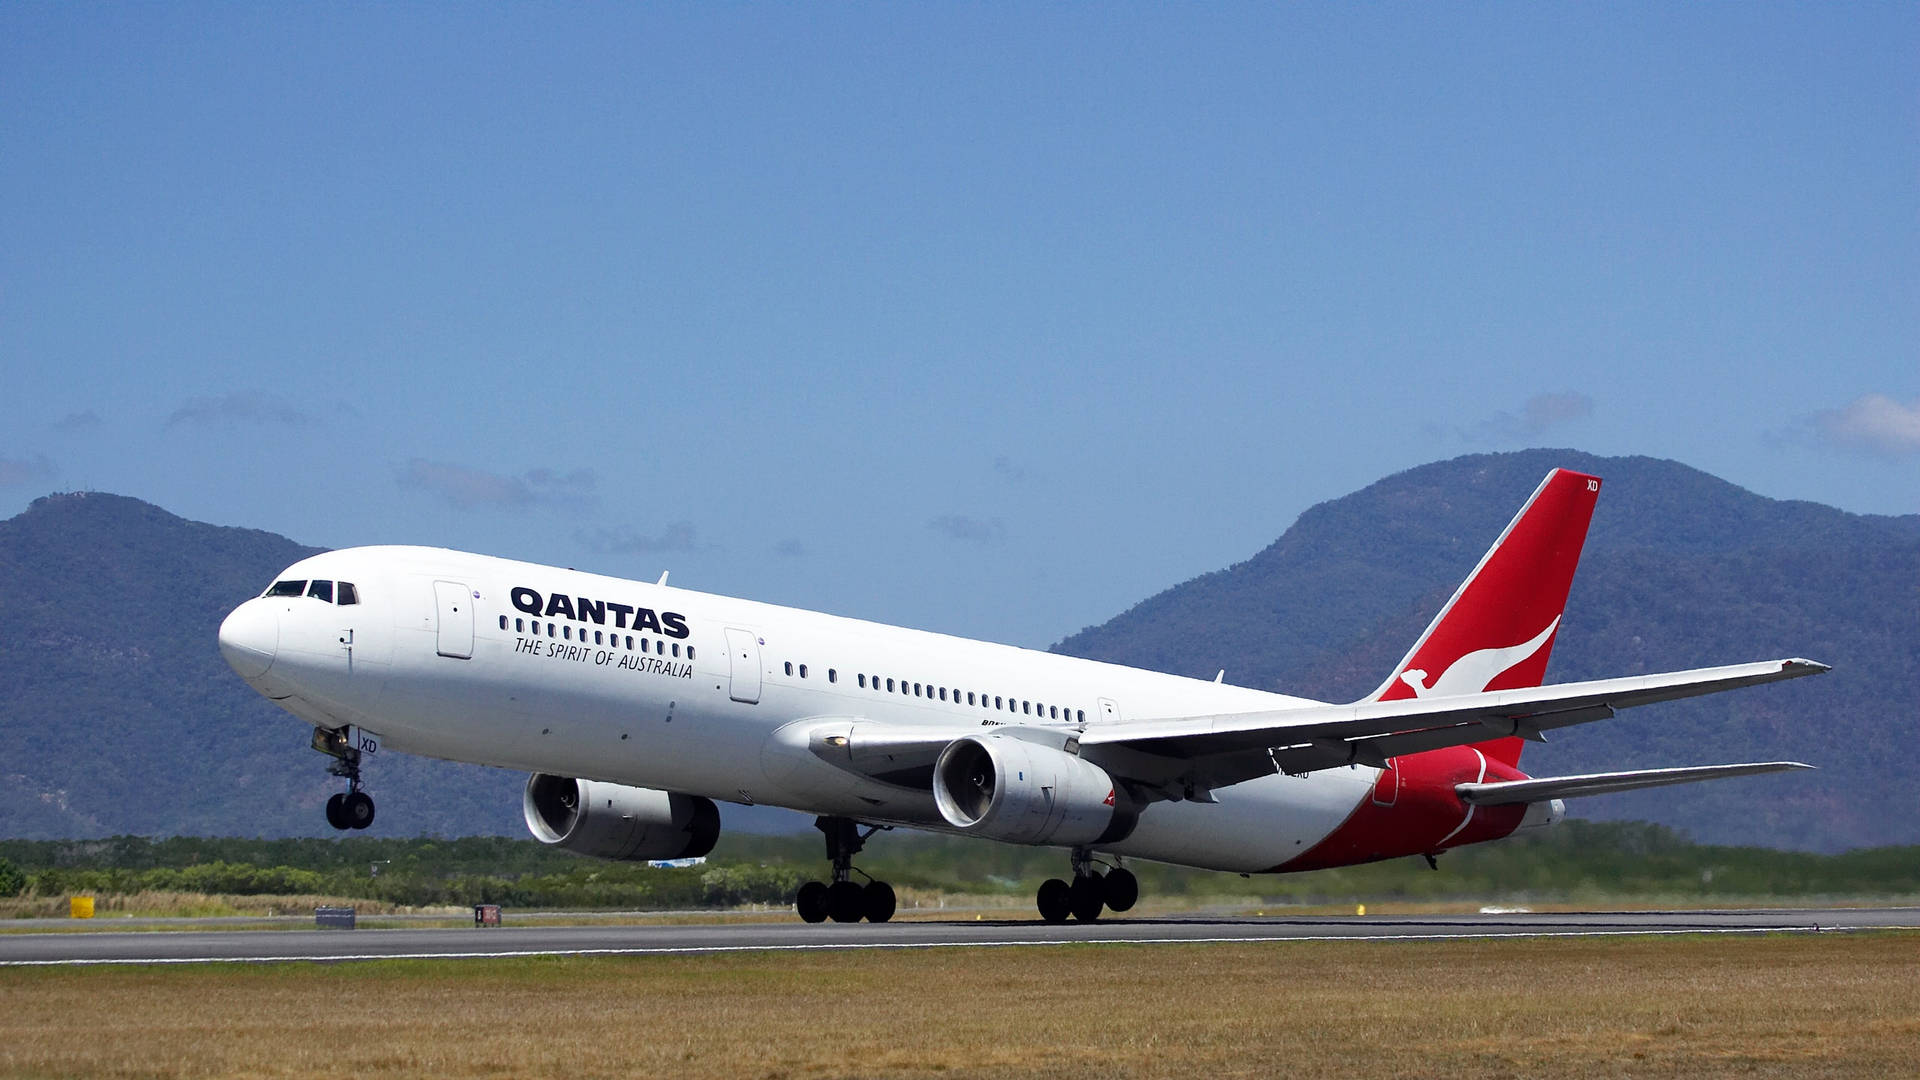 Qantaspassagerarflygplan Som Lyfter. Wallpaper